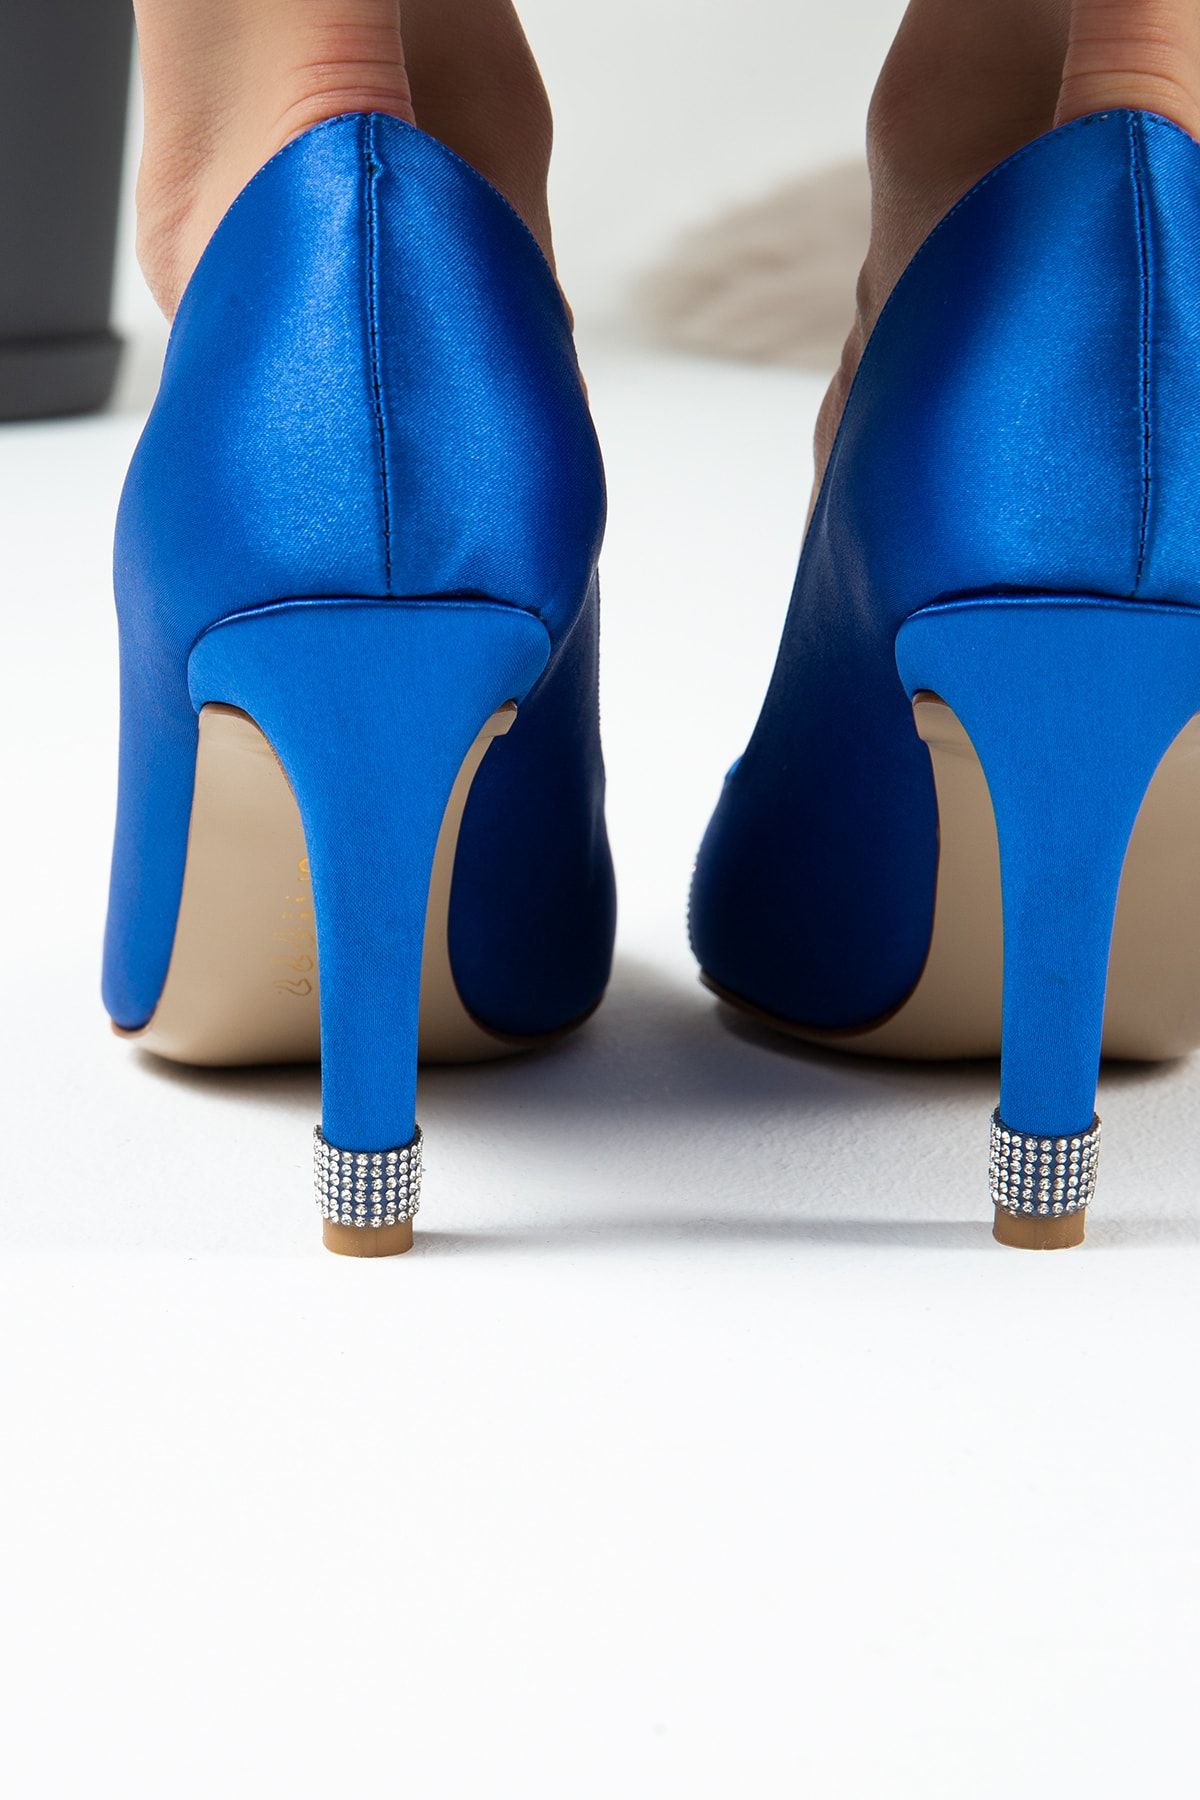 Deery Mavi Stiletto Taşlı Kadın Topuklu Ayakkabı